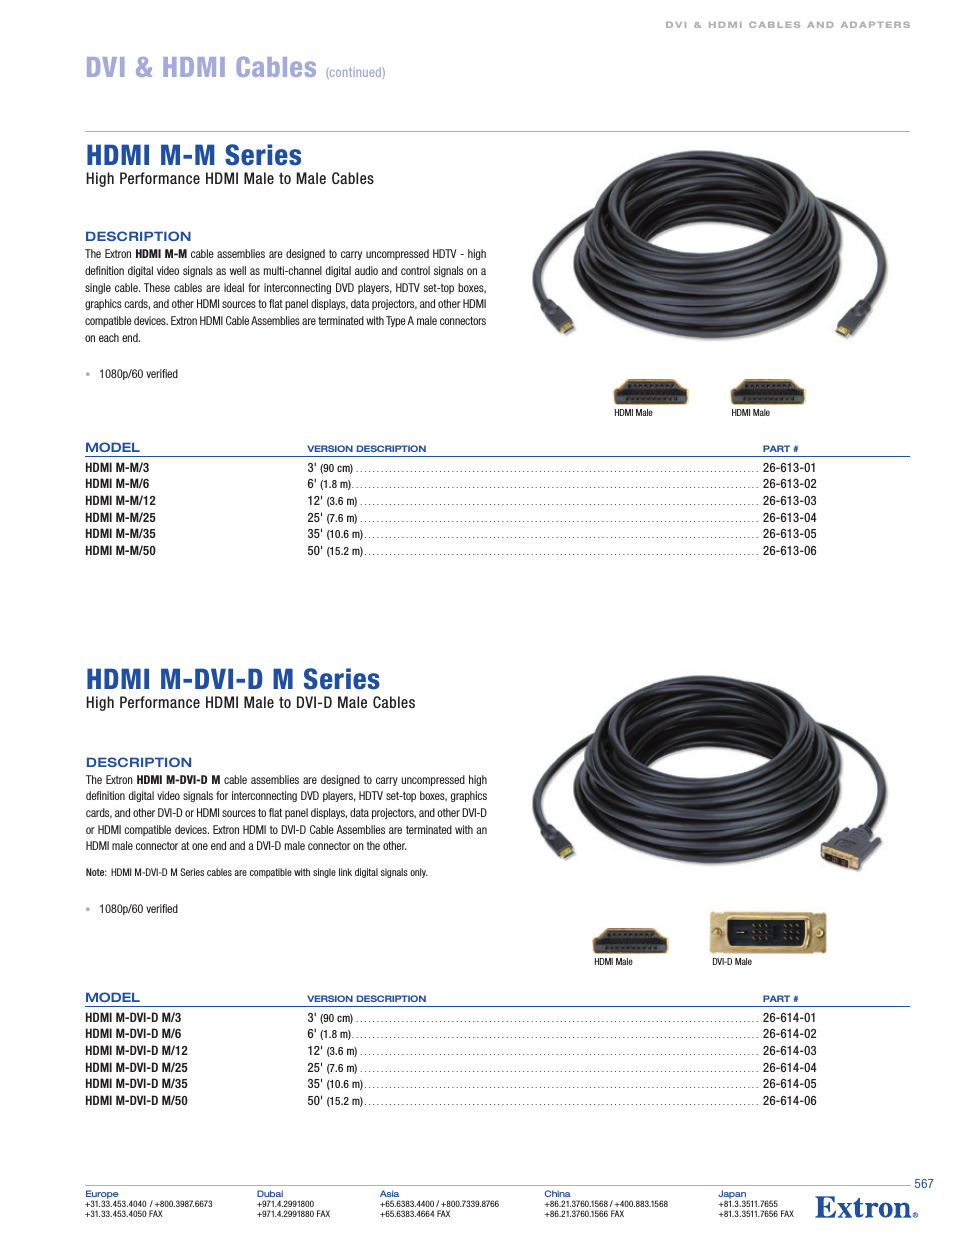 HDMI M-M/25 25